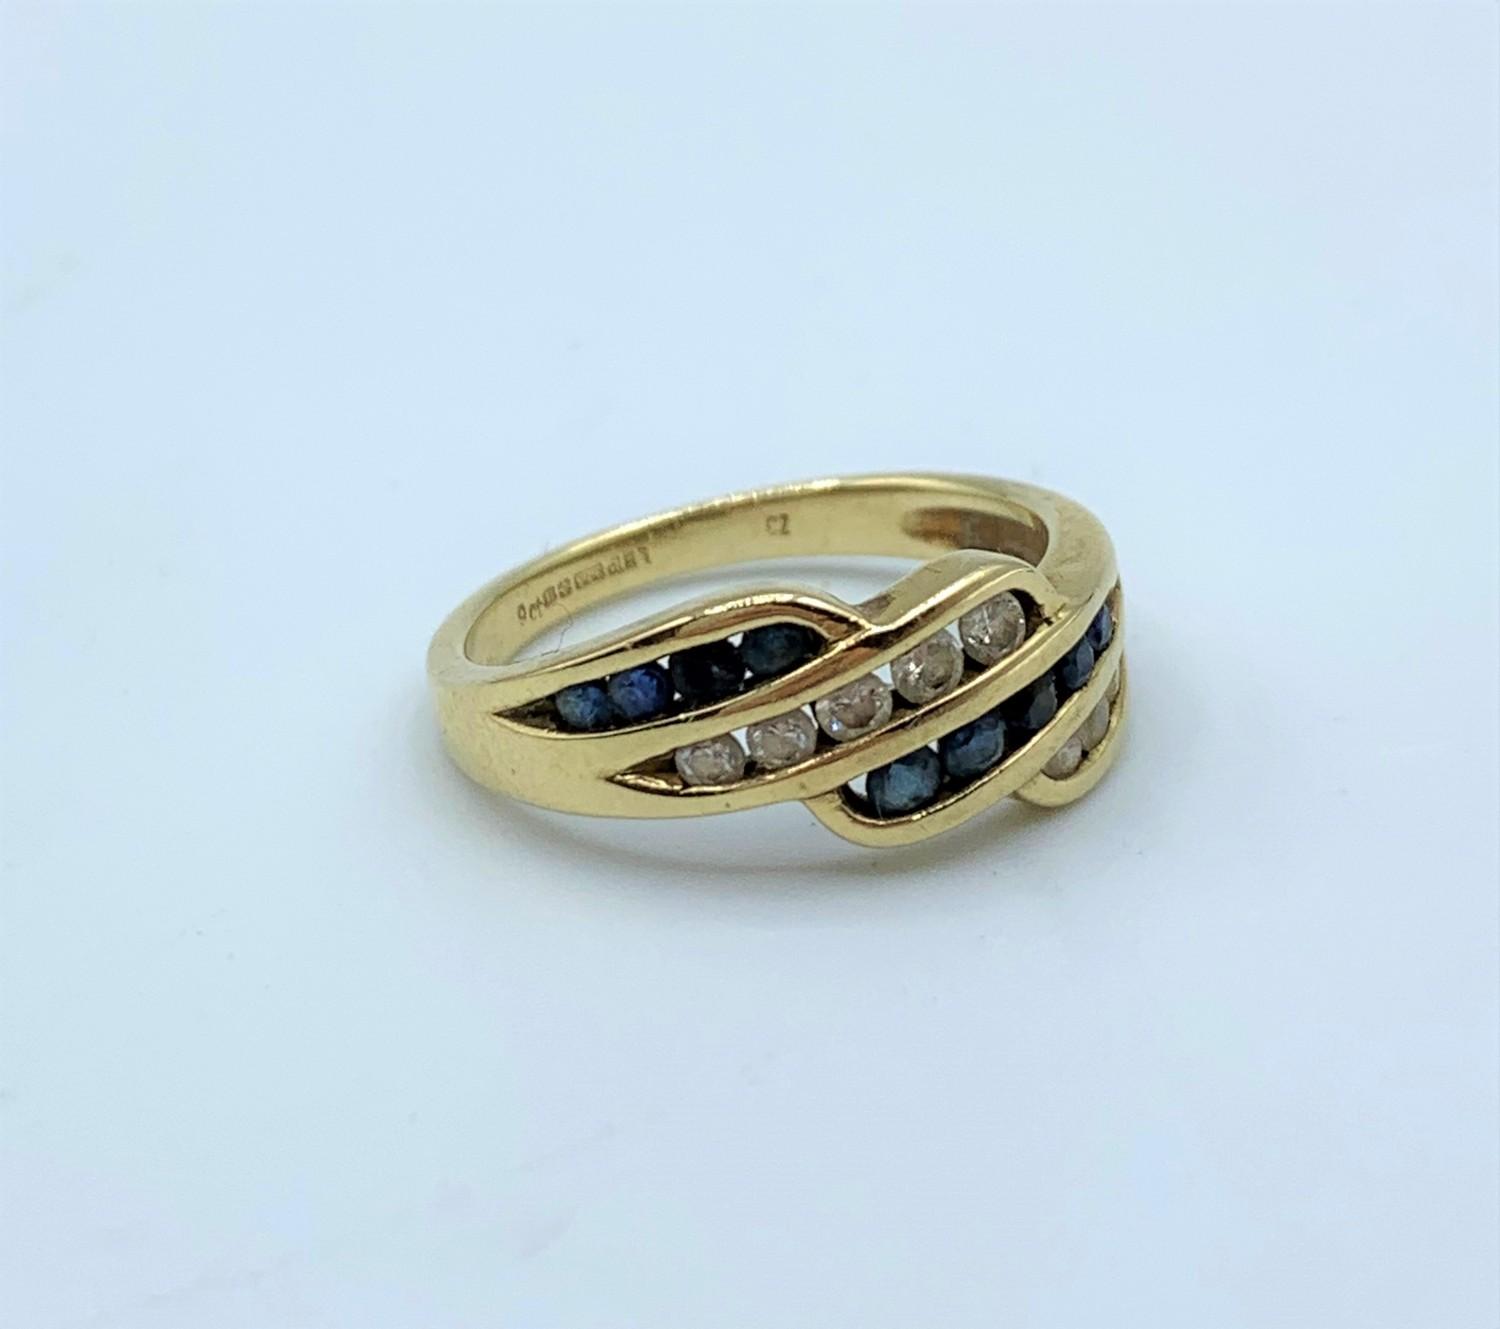 Black stone ring, size L.